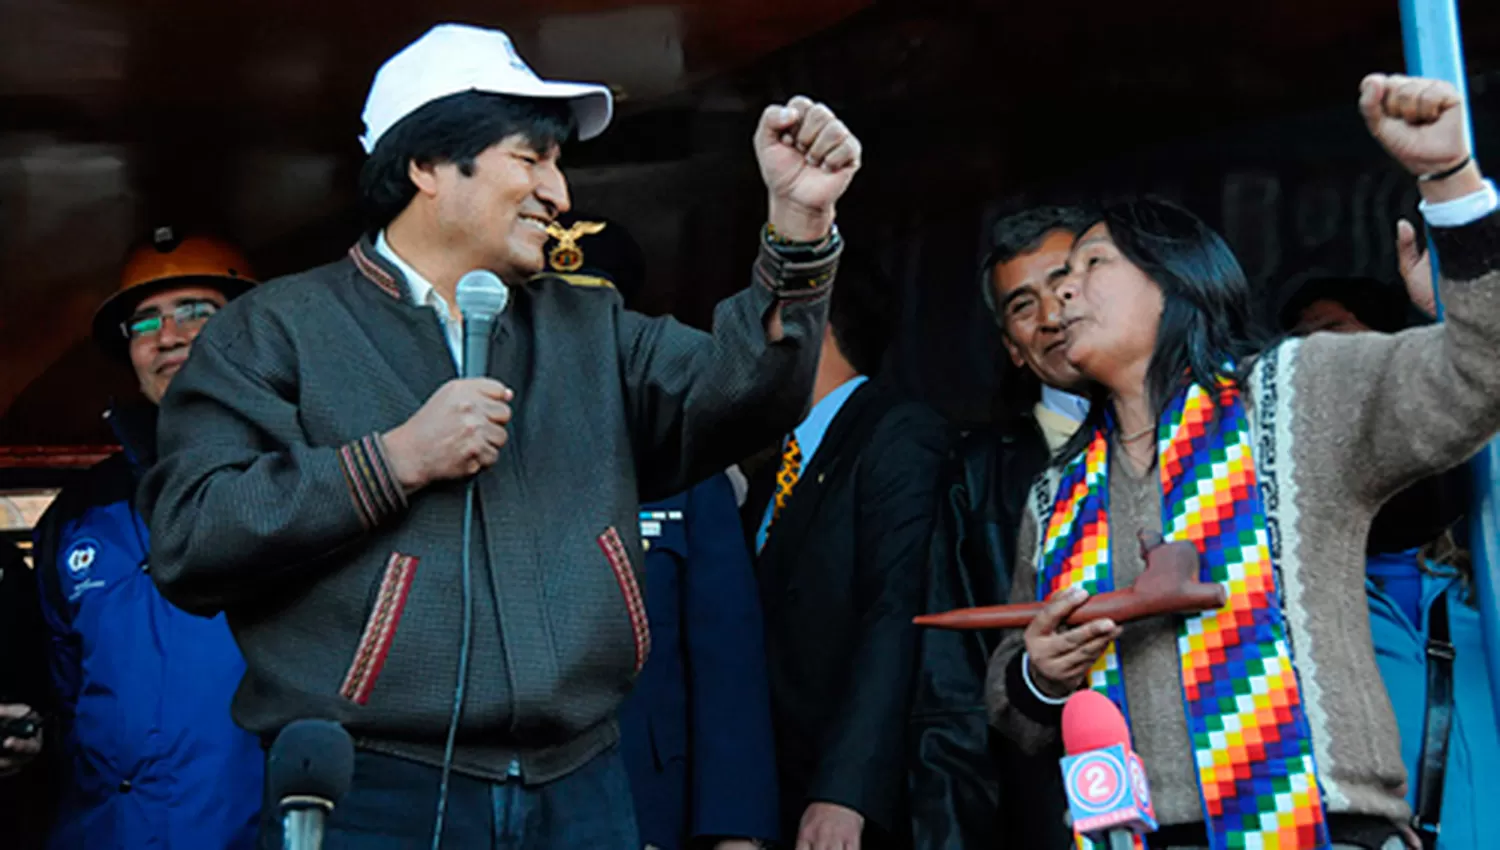 Sala recibió apoyo de Evo Morales tras ser condenada a 13 años de prisión. FOTO TOMADA DE CONSULADODEBOLIVIA.COM.AR